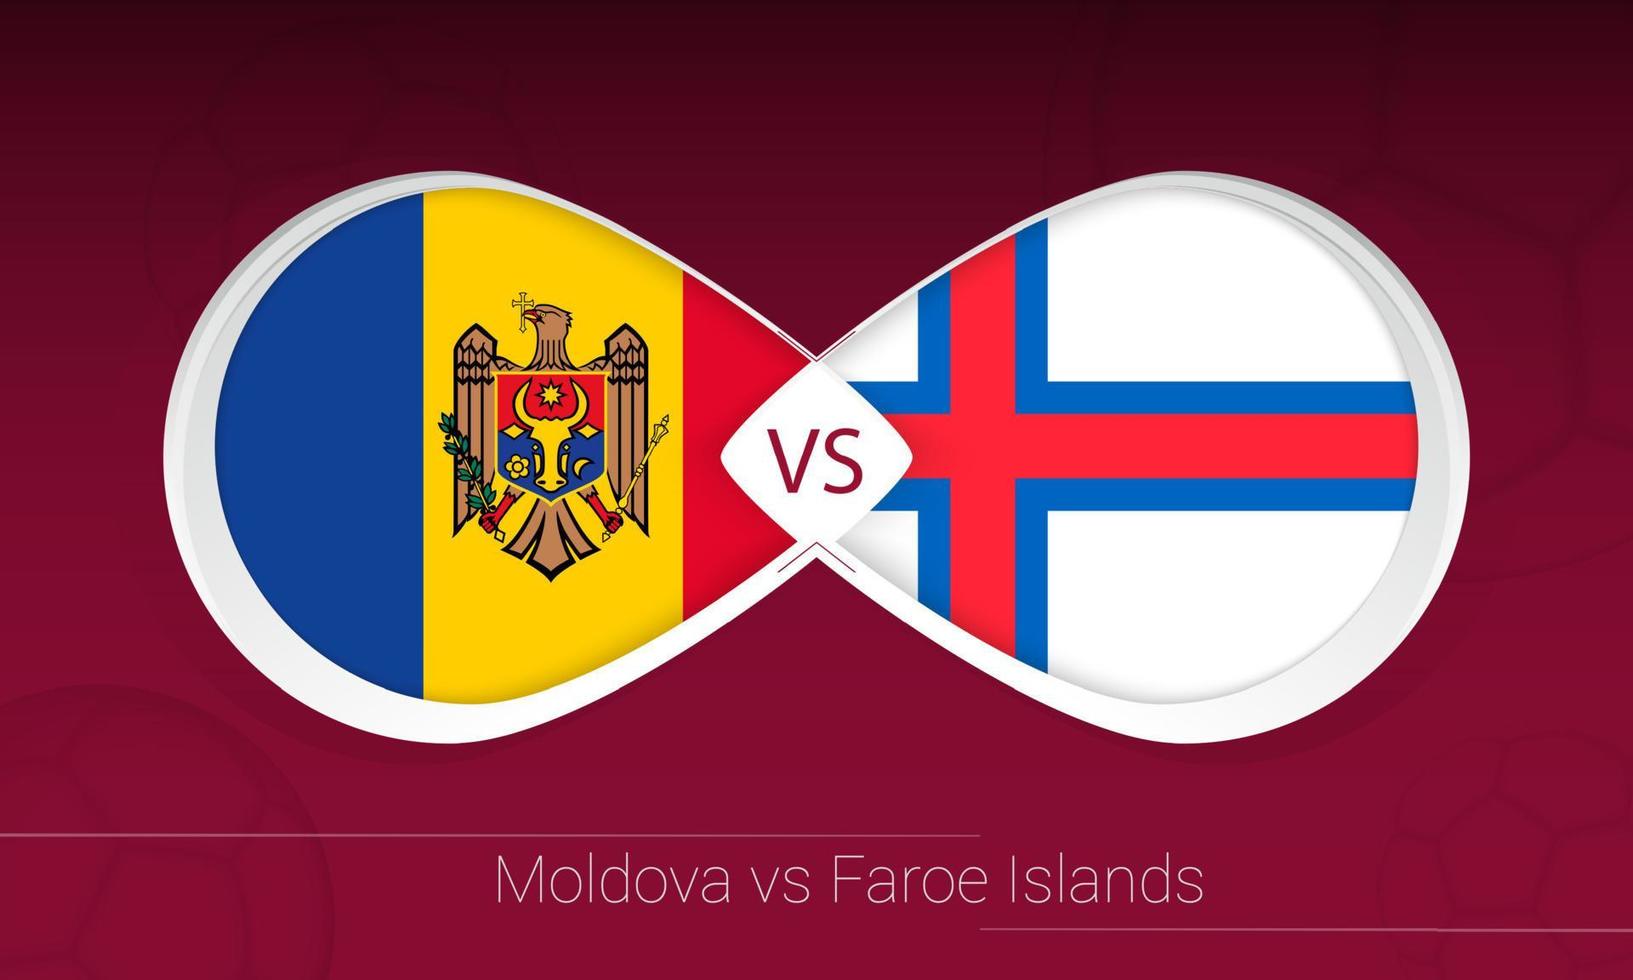 Moldavien vs Färöarna i fotbollstävling, grupp f. kontra ikonen på fotboll bakgrund. vektor